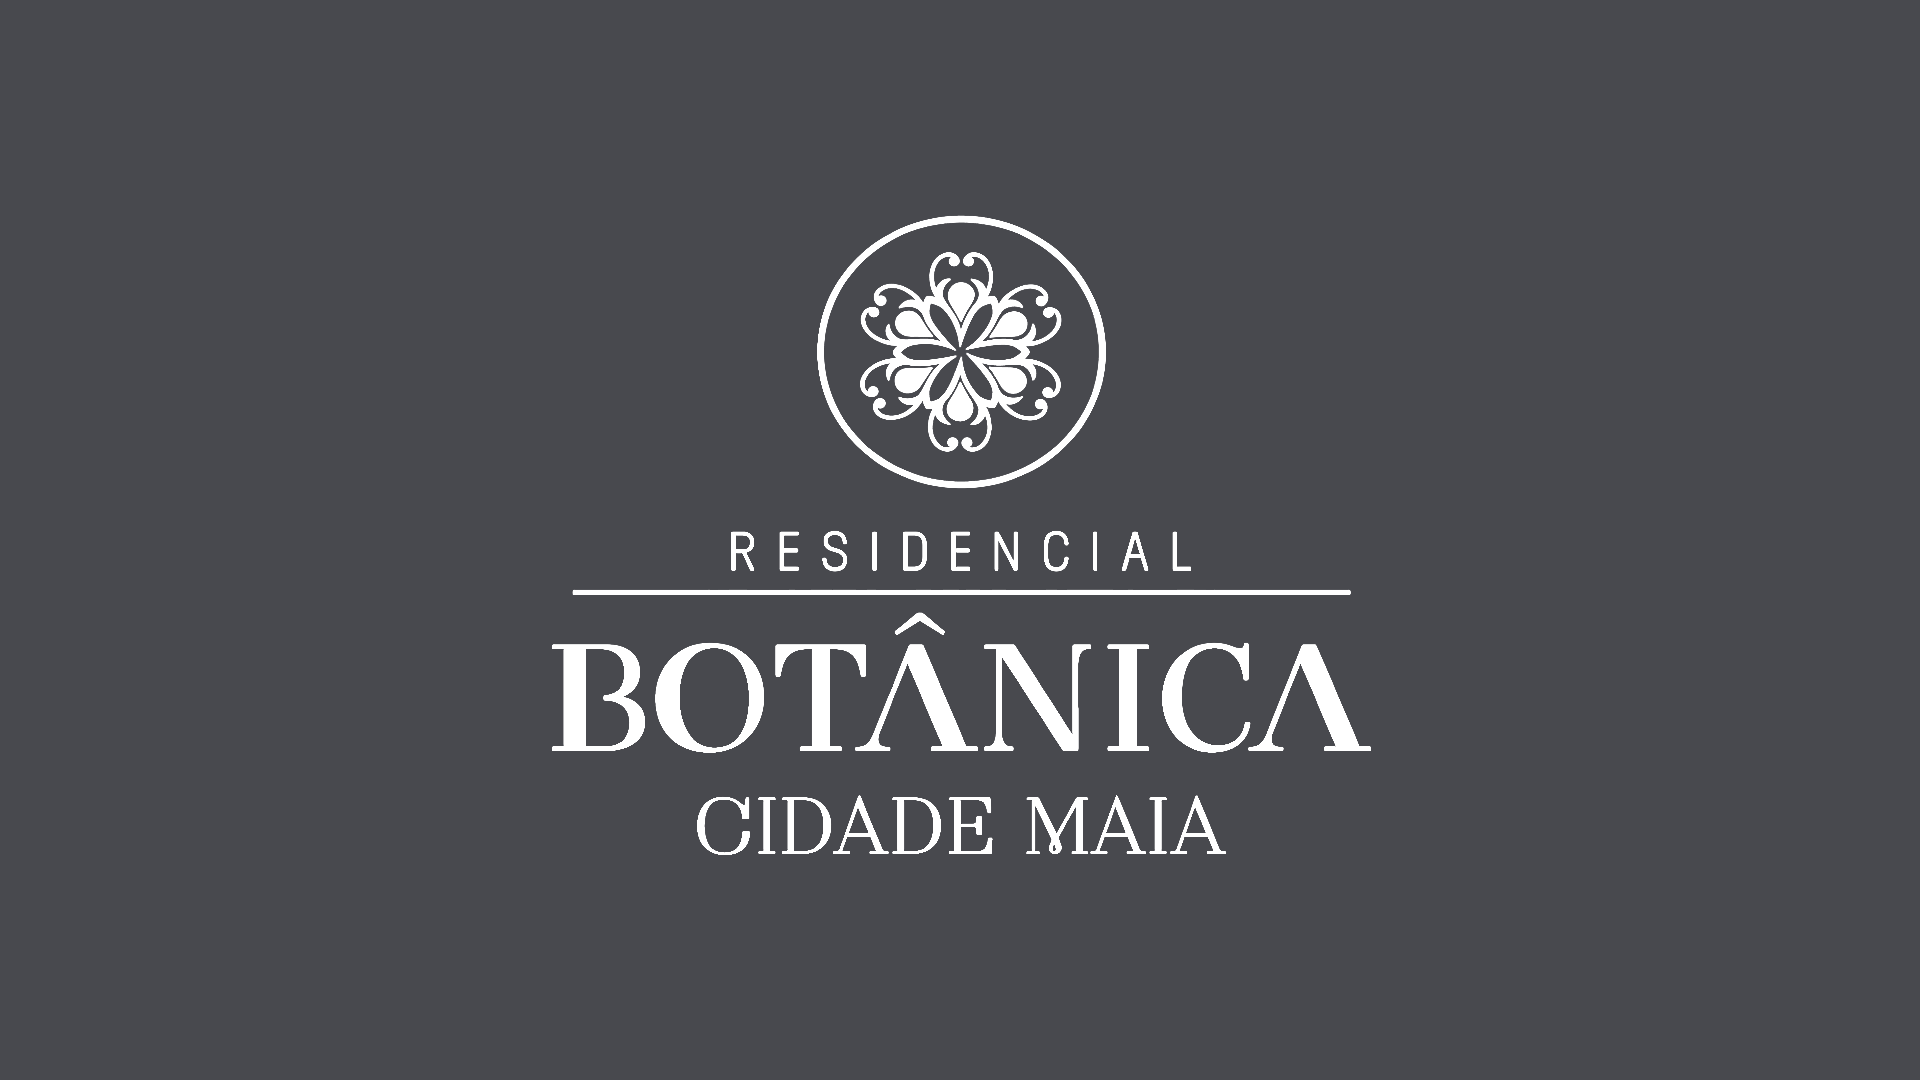 Botânica Cidade Maia — Apartamentos Alto Padrão 03 Dorms.